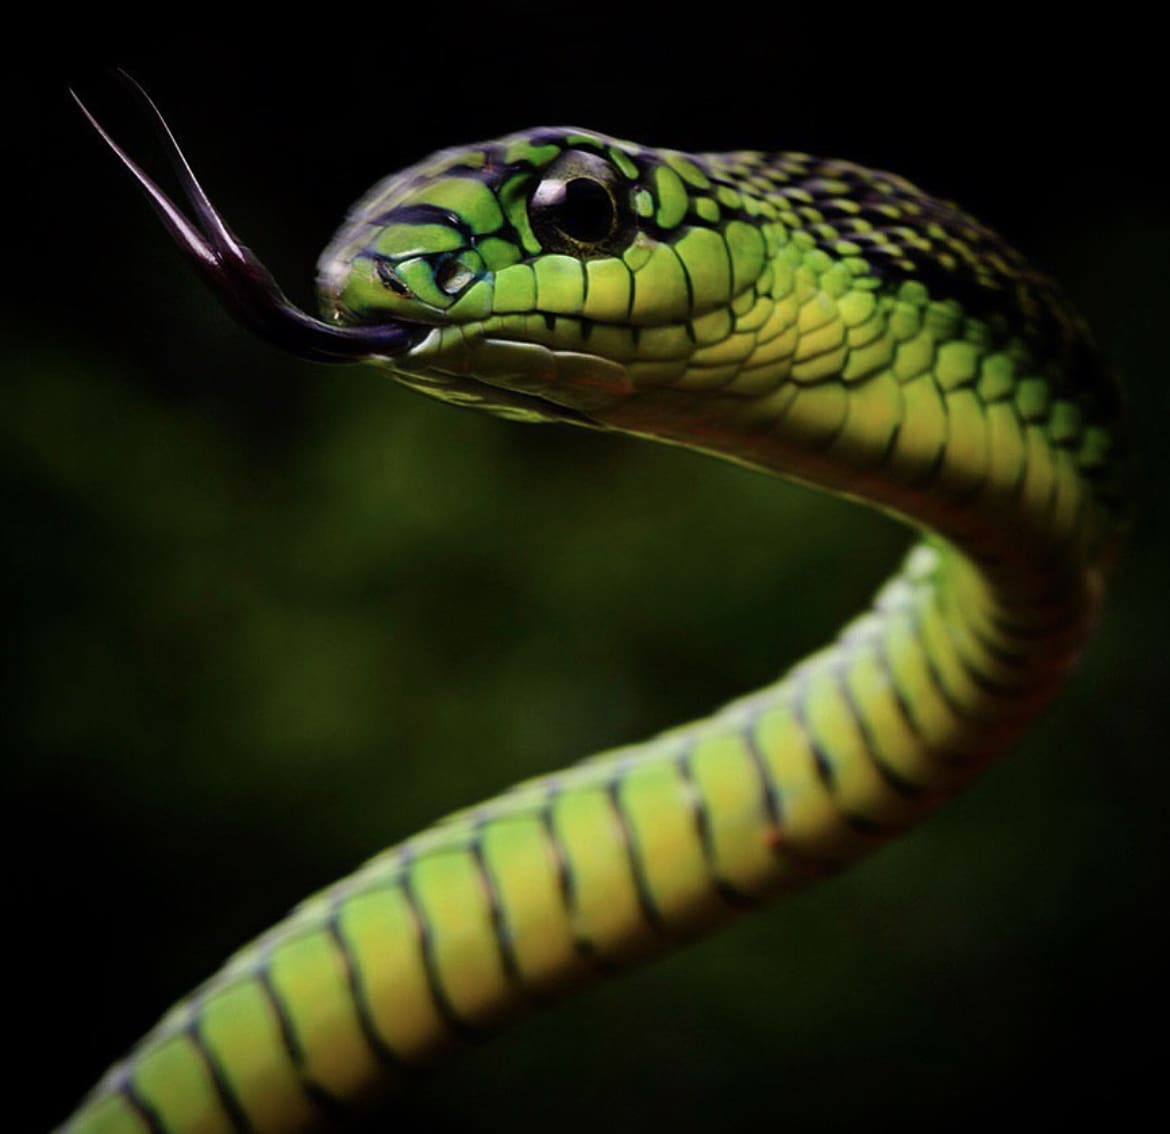 Green snake in Africa